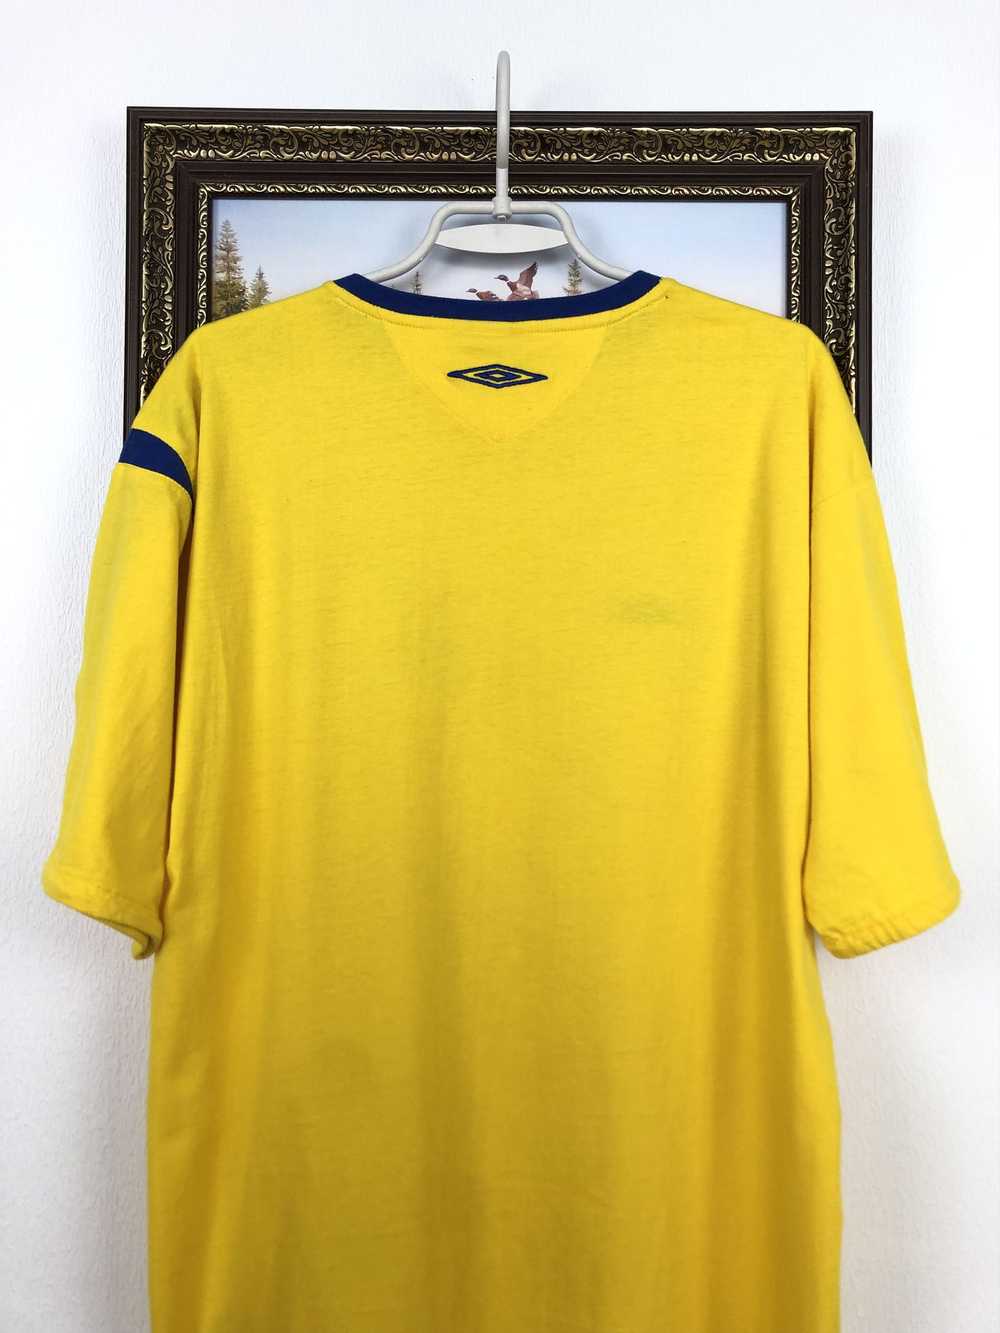 Soccer Jersey × Sportswear × Vintage Vintage Swed… - image 12